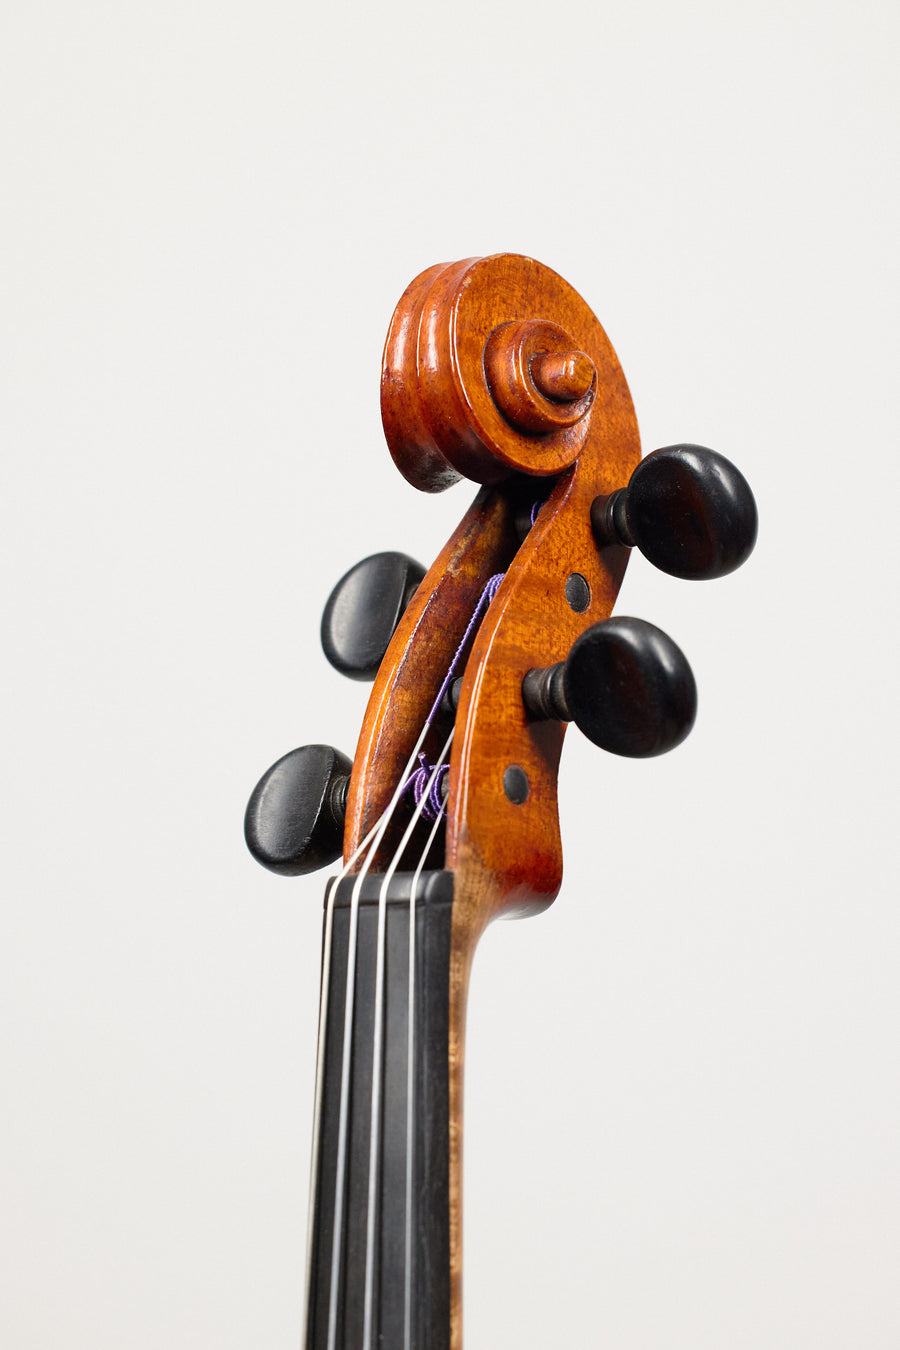 A Good Danish Violin by Henrik Hvilsted, 1934.